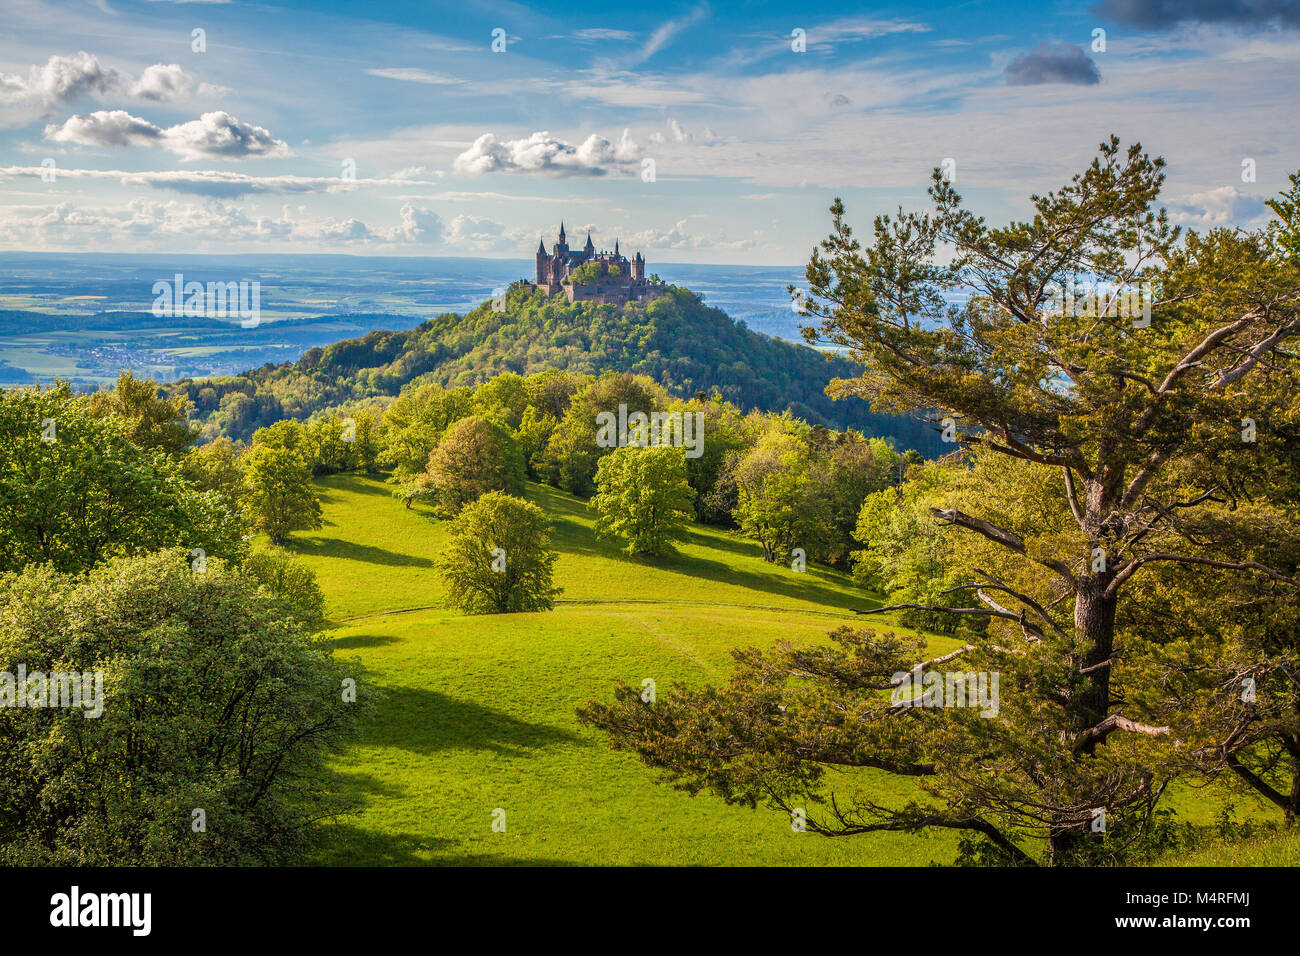 Vista aerea del famoso Castello Hohenzollern, sede ancestrale della casa imperiale degli Hohenzollern e uno d'Europa più visitato castelli, Germania Foto Stock